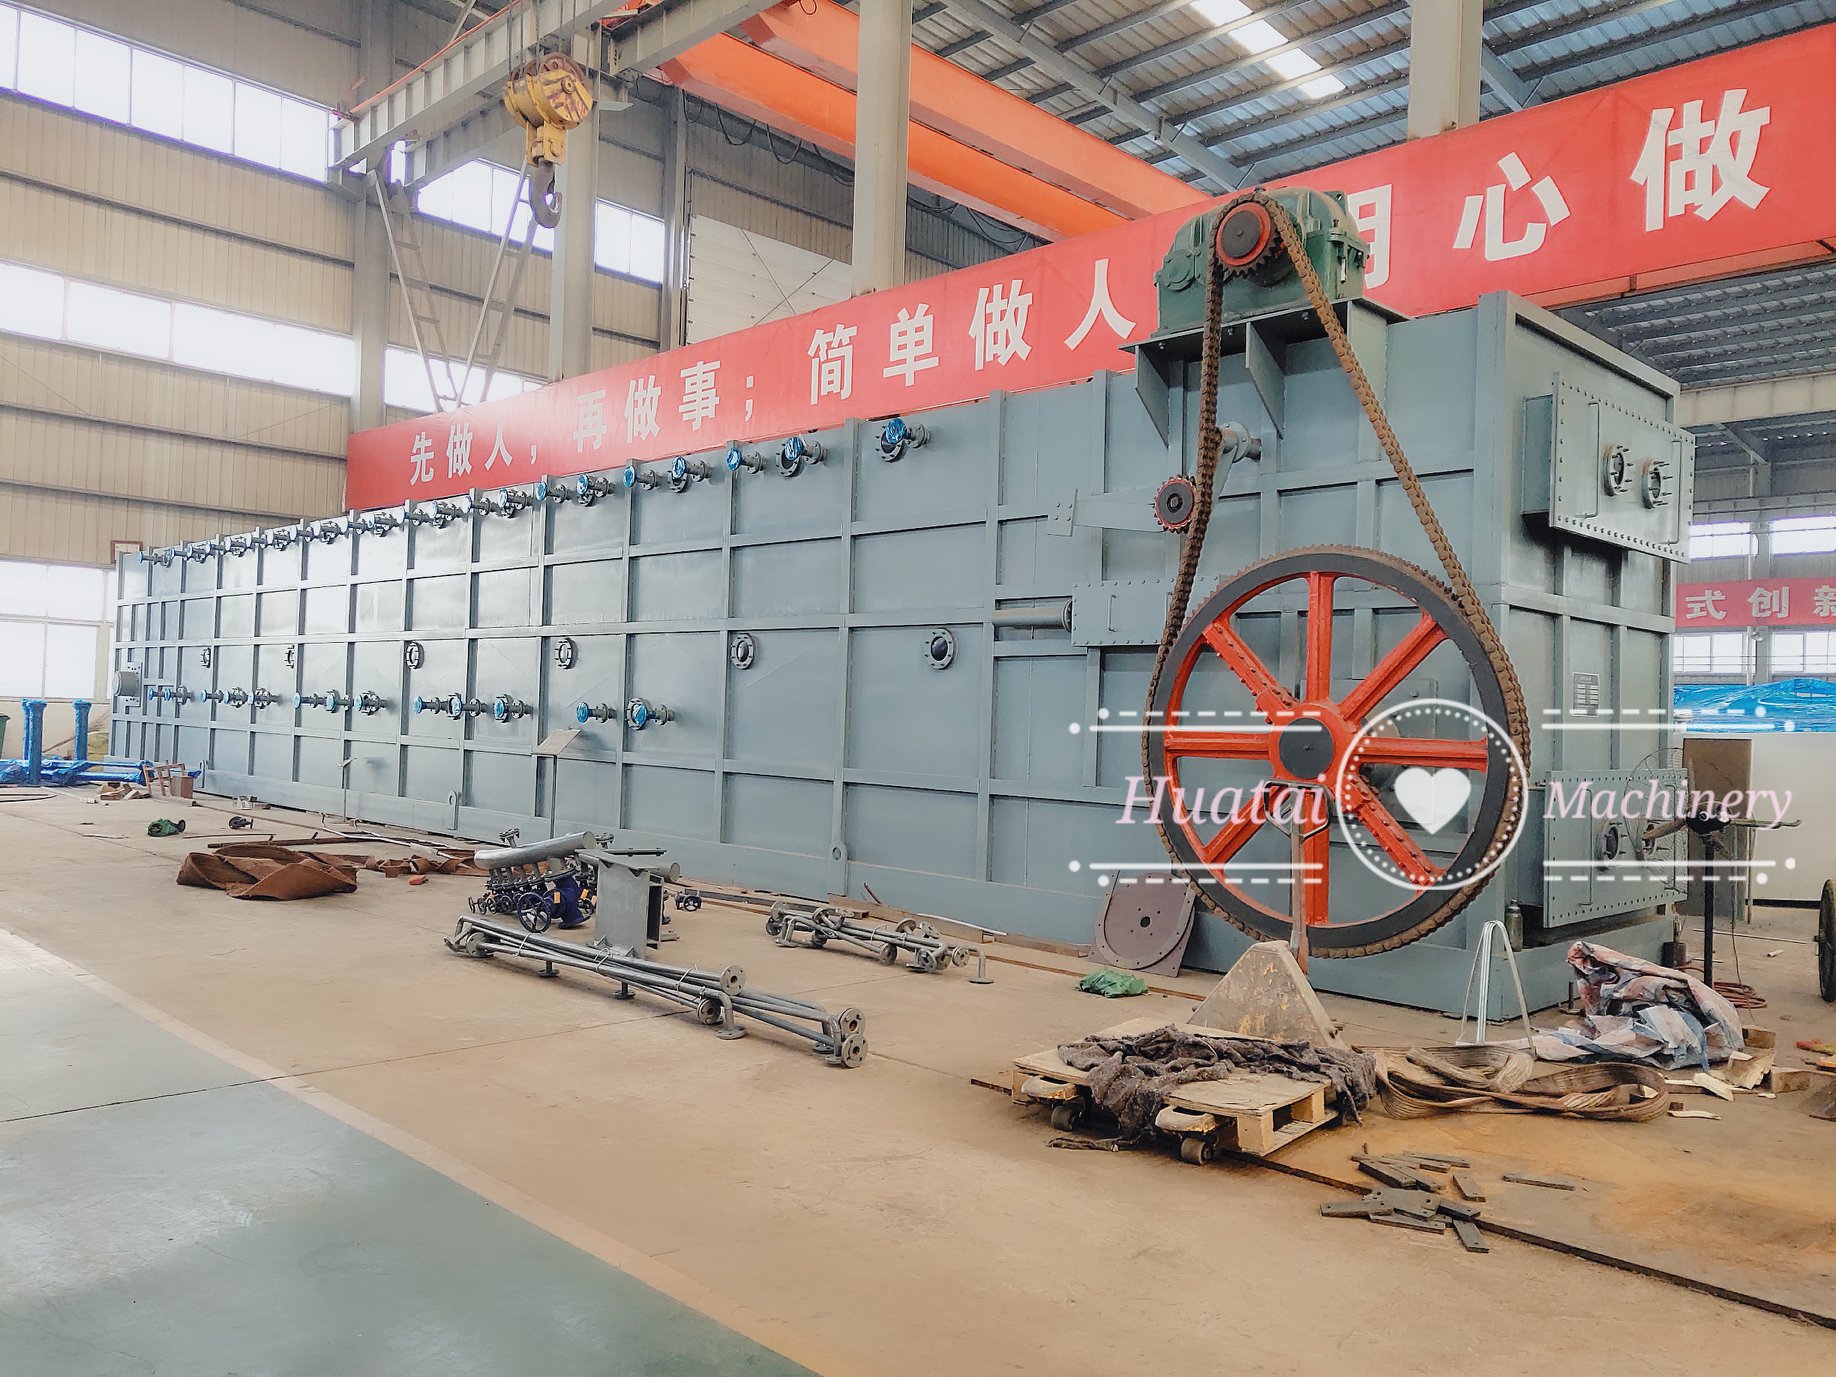 оборудование для экстракции льняного масла из Китая по заводской цене